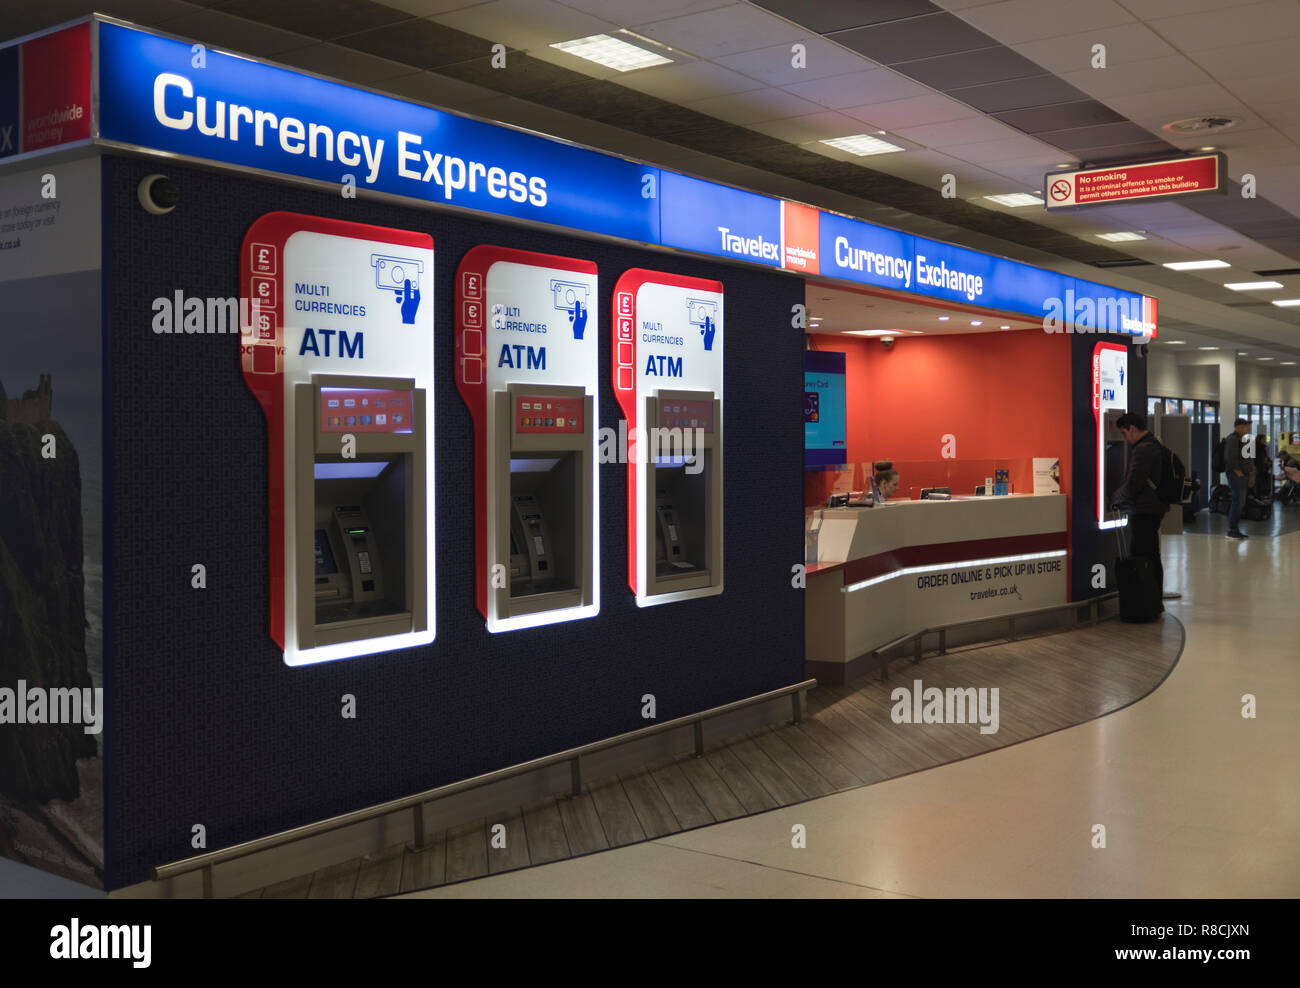 L'Aéroport International d'Aberdeen dh Bureau de change étrangères Royaume-uni ATM machine machines multi devises paiement Ecosse Banque D'Images